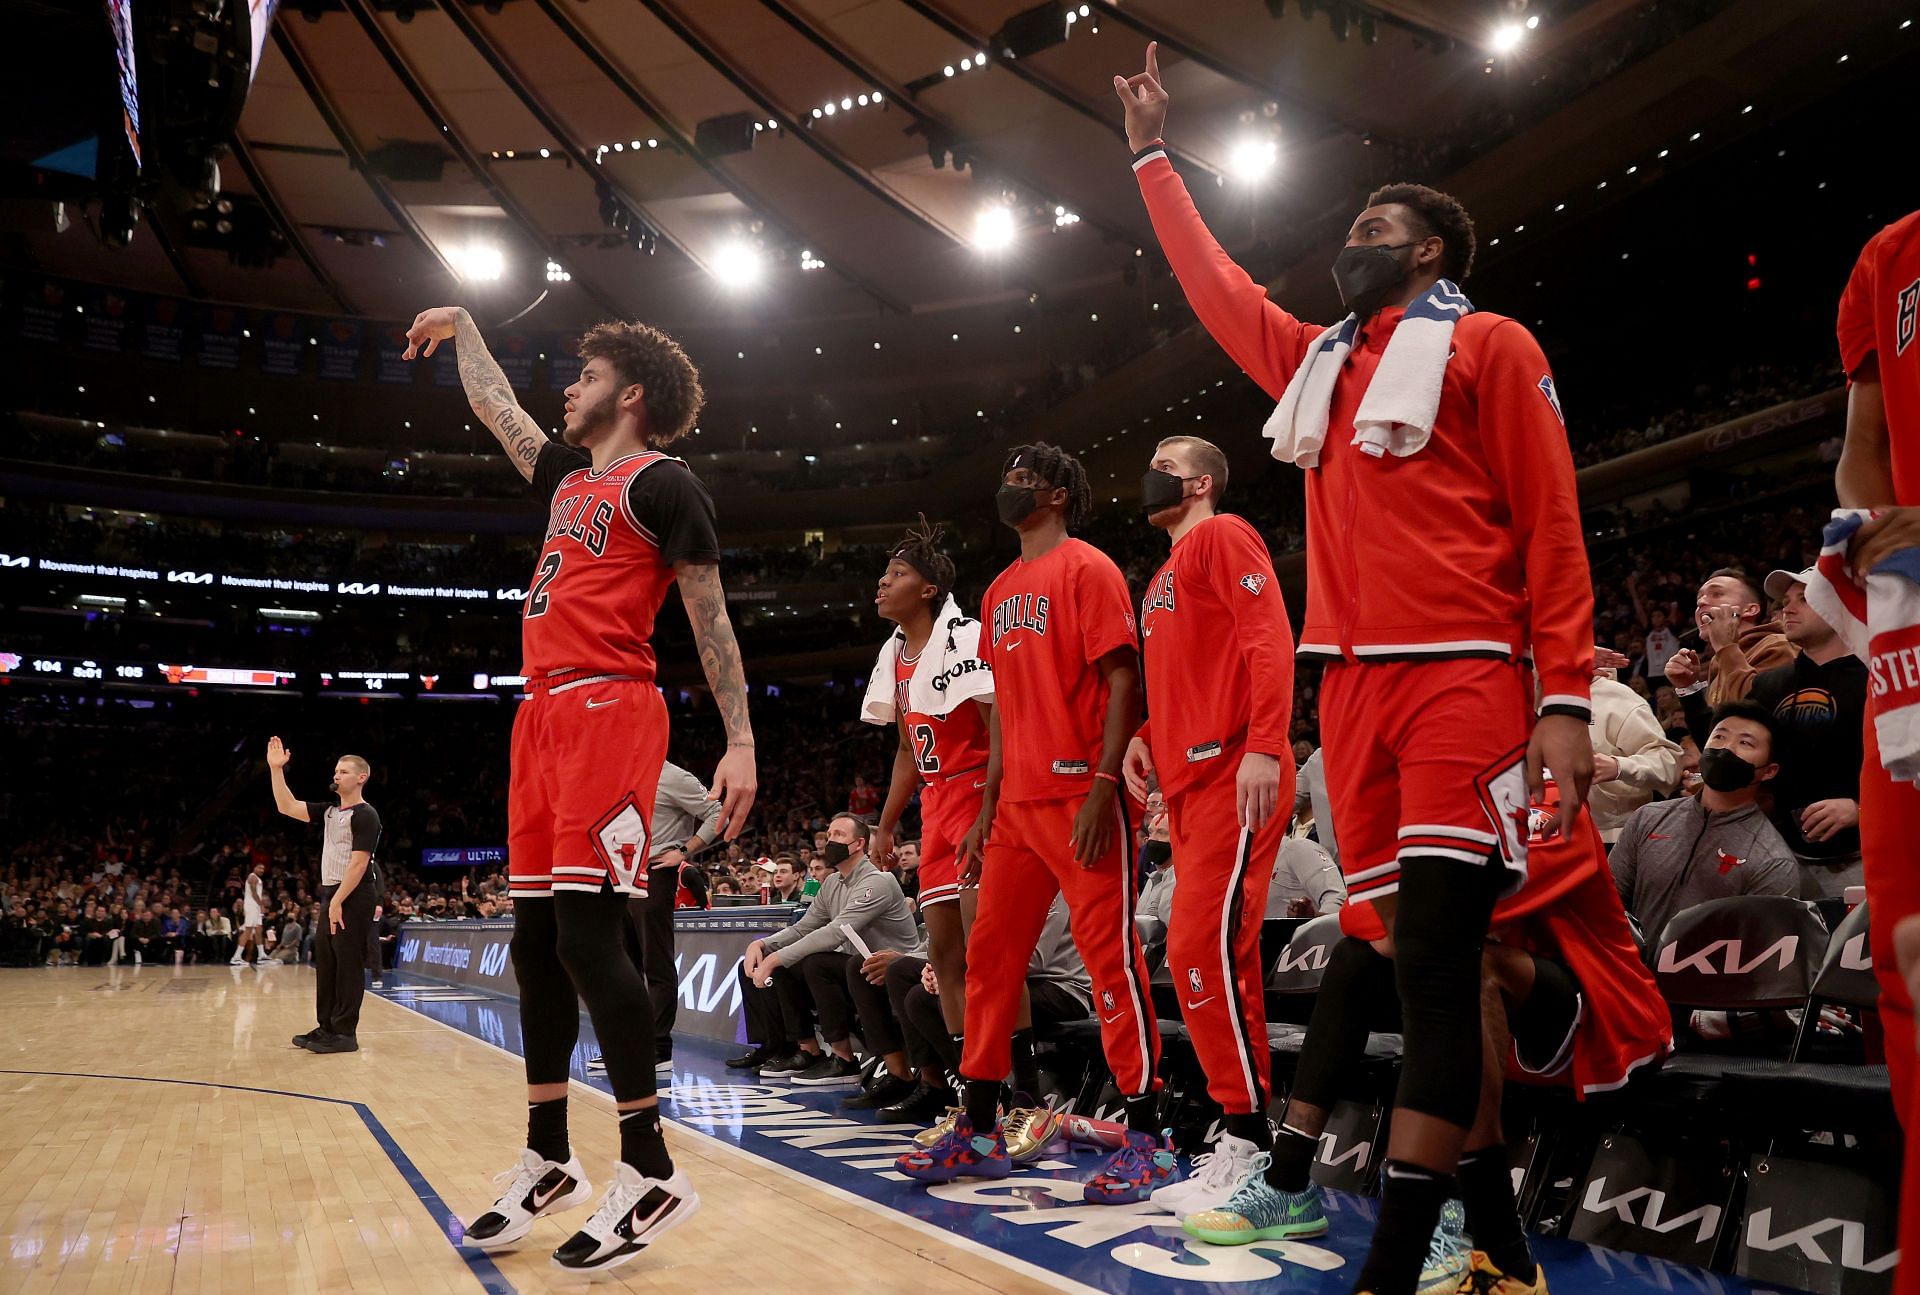 Chicago Bulls vs New York Knicks